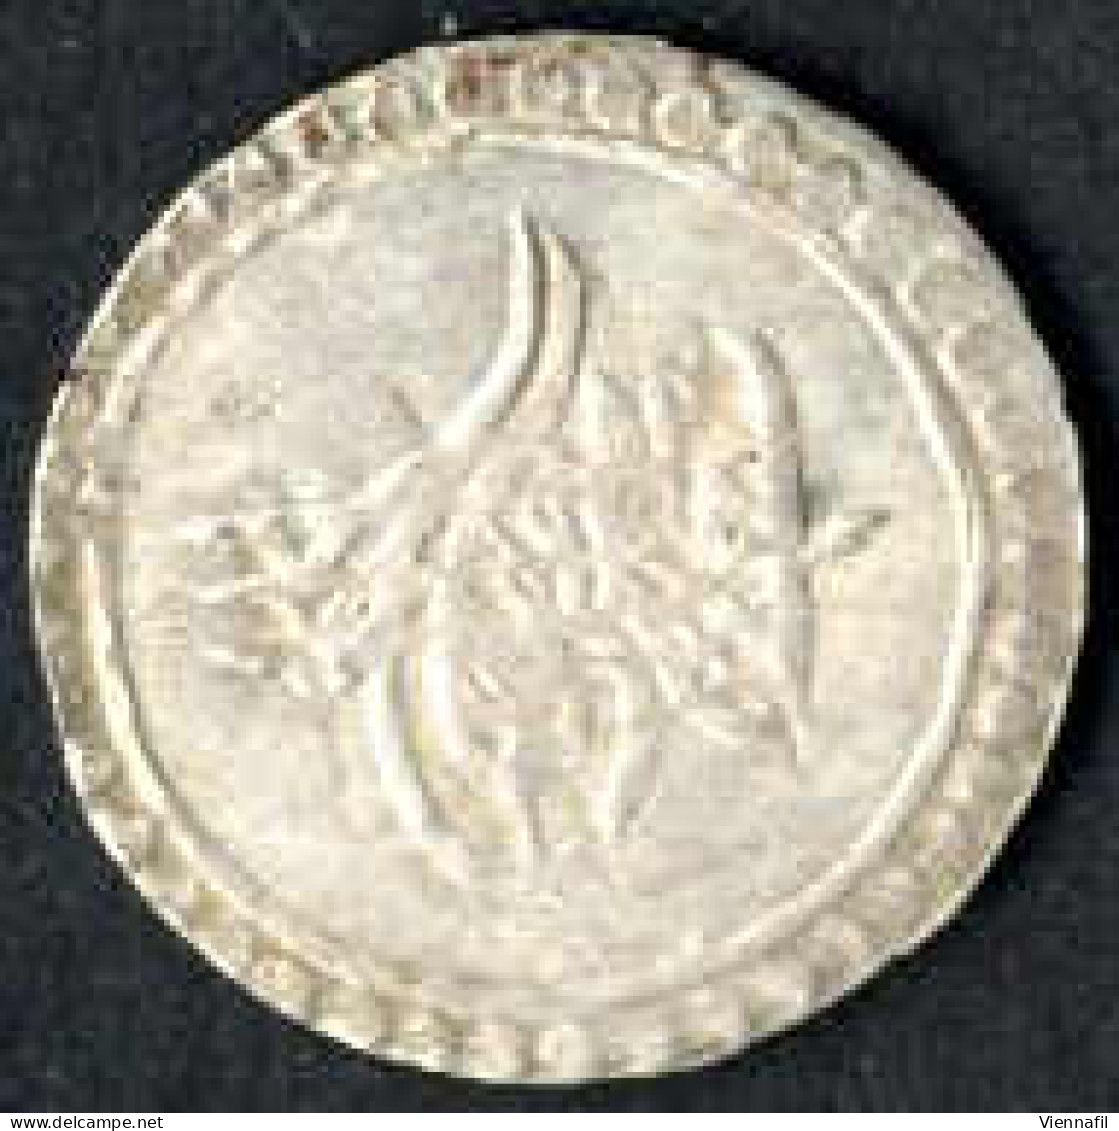 Mahmud I., 1143-1168AH 1730-1754, Para Silber, Jahr 1-87 Islambul Misr, Sultan 294, 2150 Craig 22,41, Vorzüglich- Bis Vo - Islamische Münzen